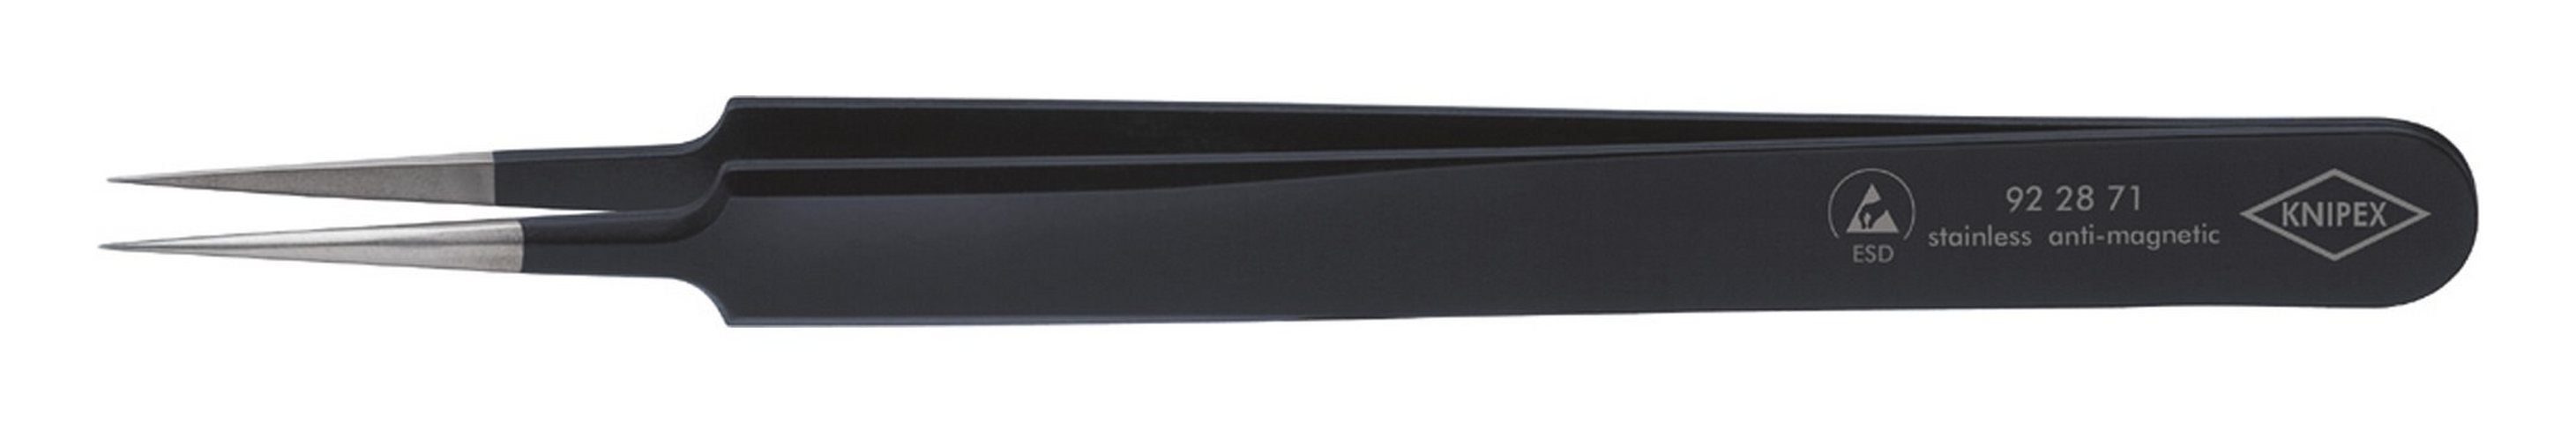 Knipex Pinzette, ESD Nadelform mm 110 schwarz